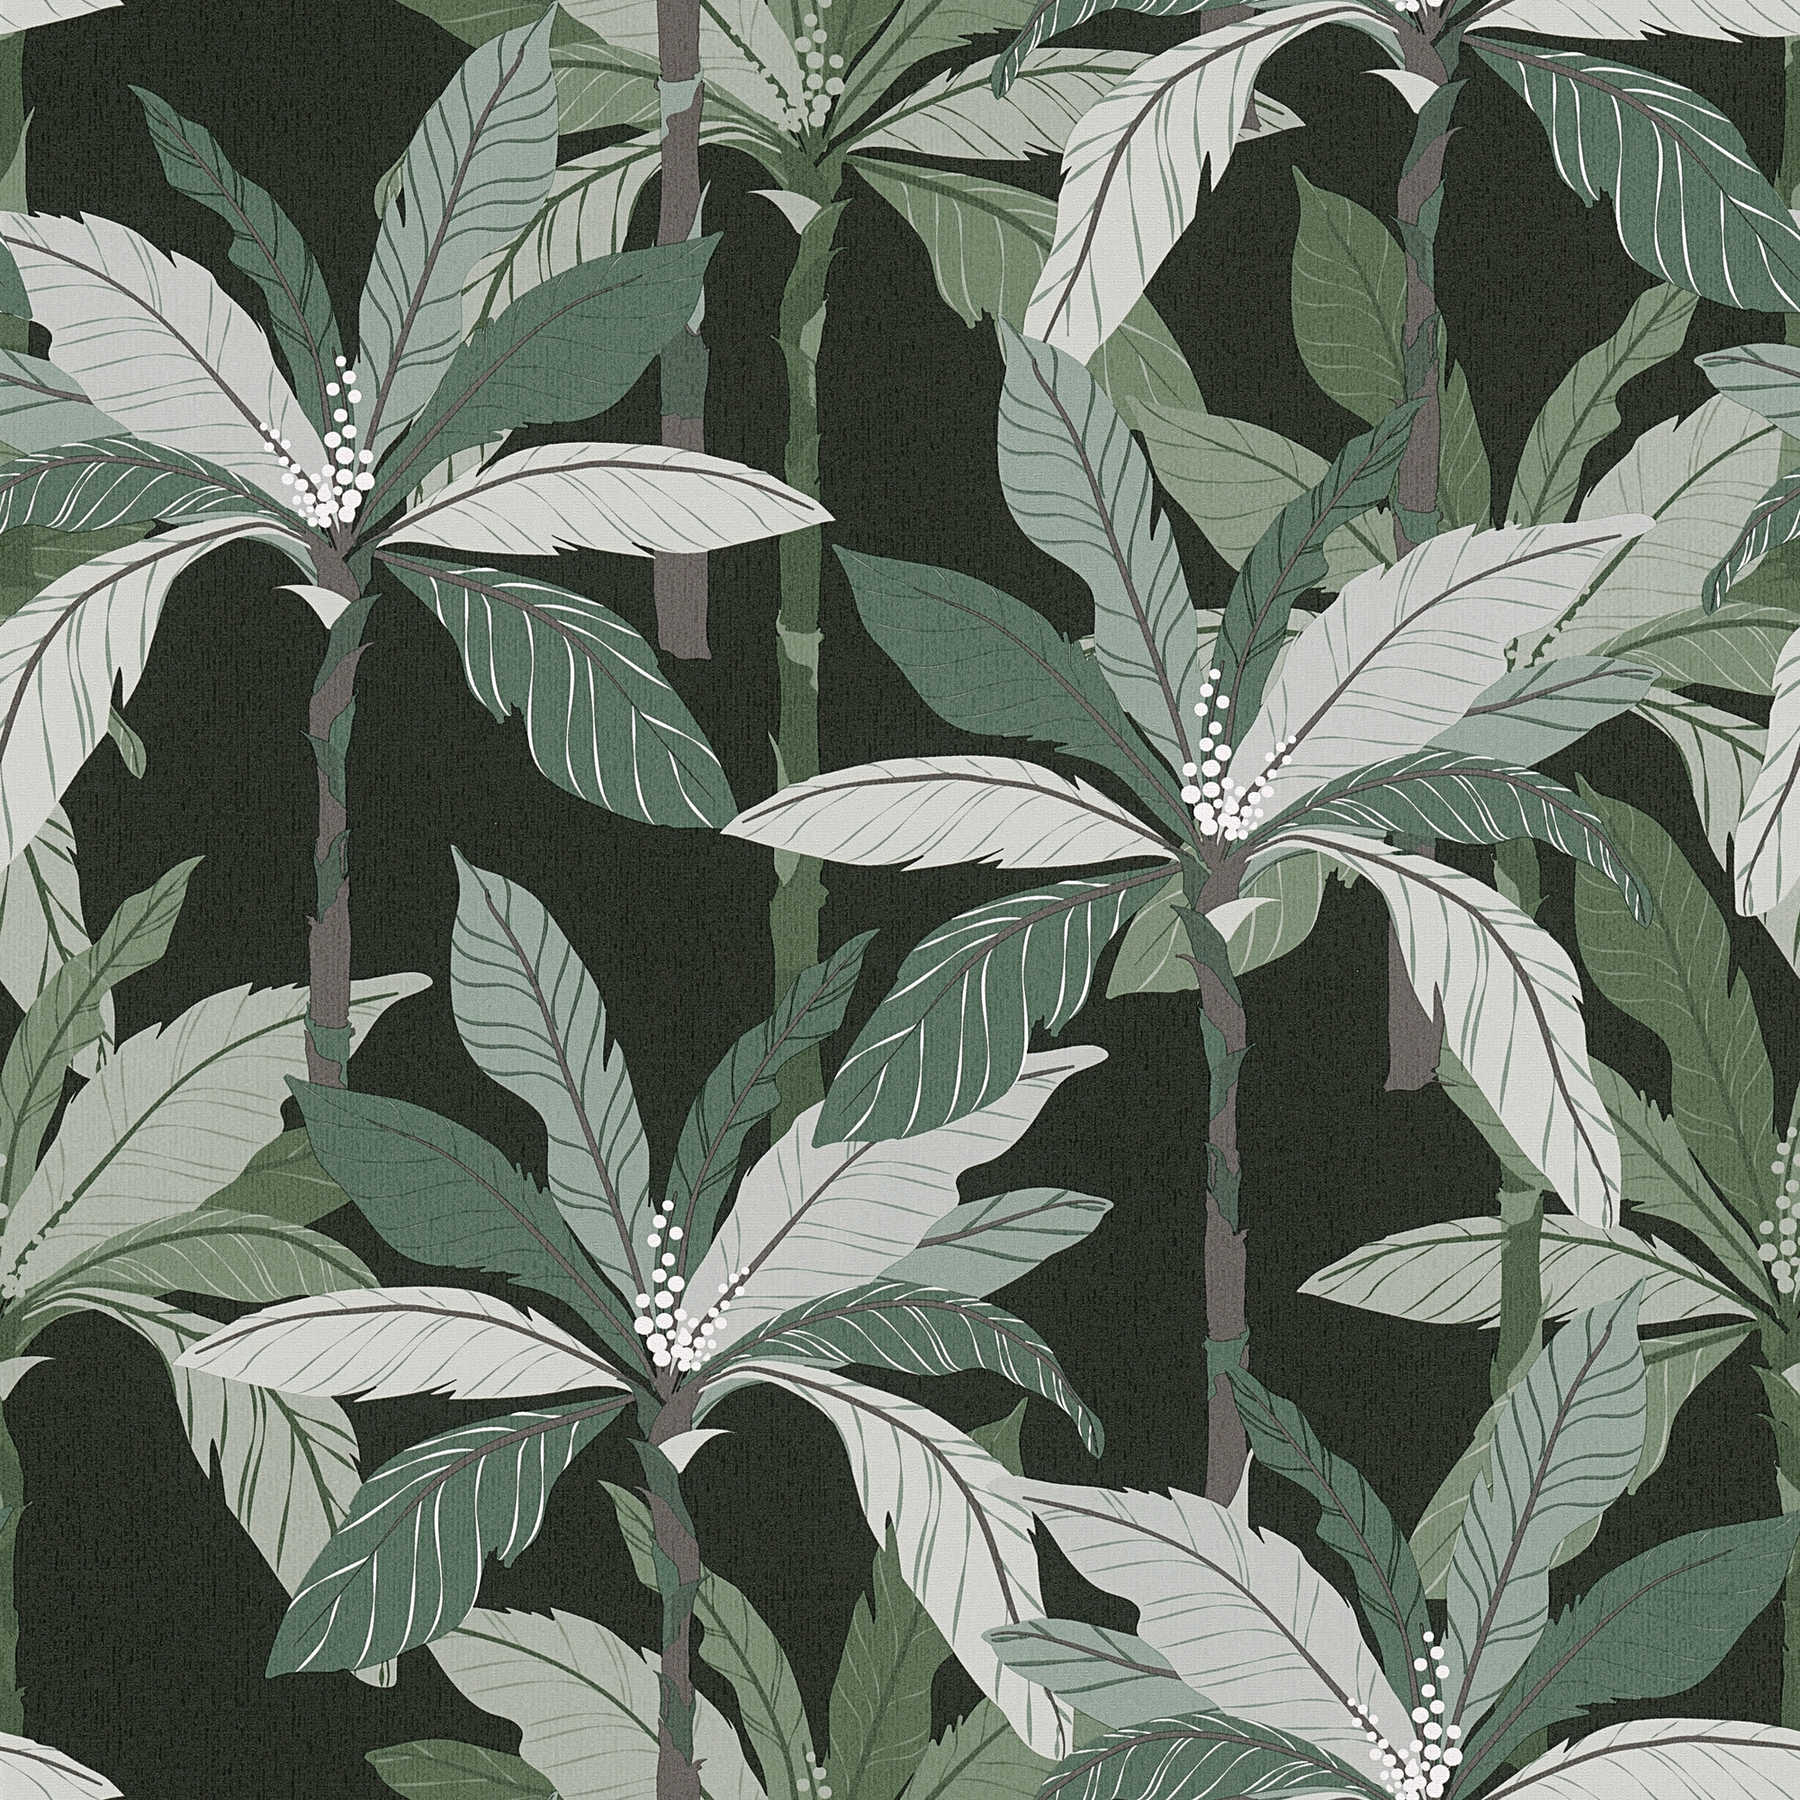 Tropen Tapete mit Palmen-Design - Grün, Schwarz
